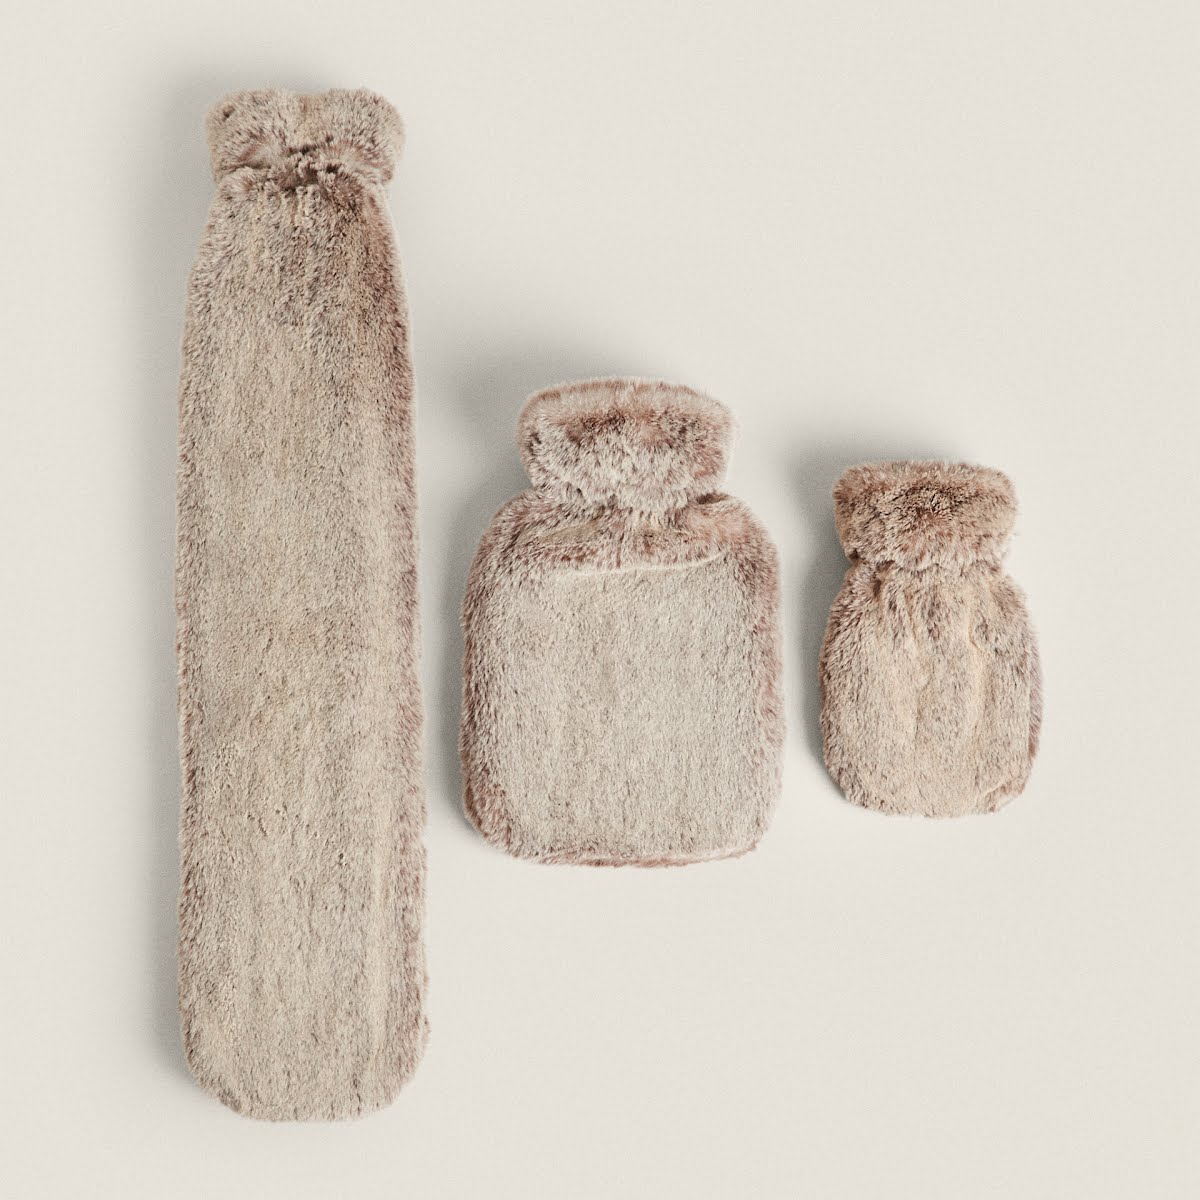 Zara Faux Fur Hot Water Bottle, €22.99-€49.99